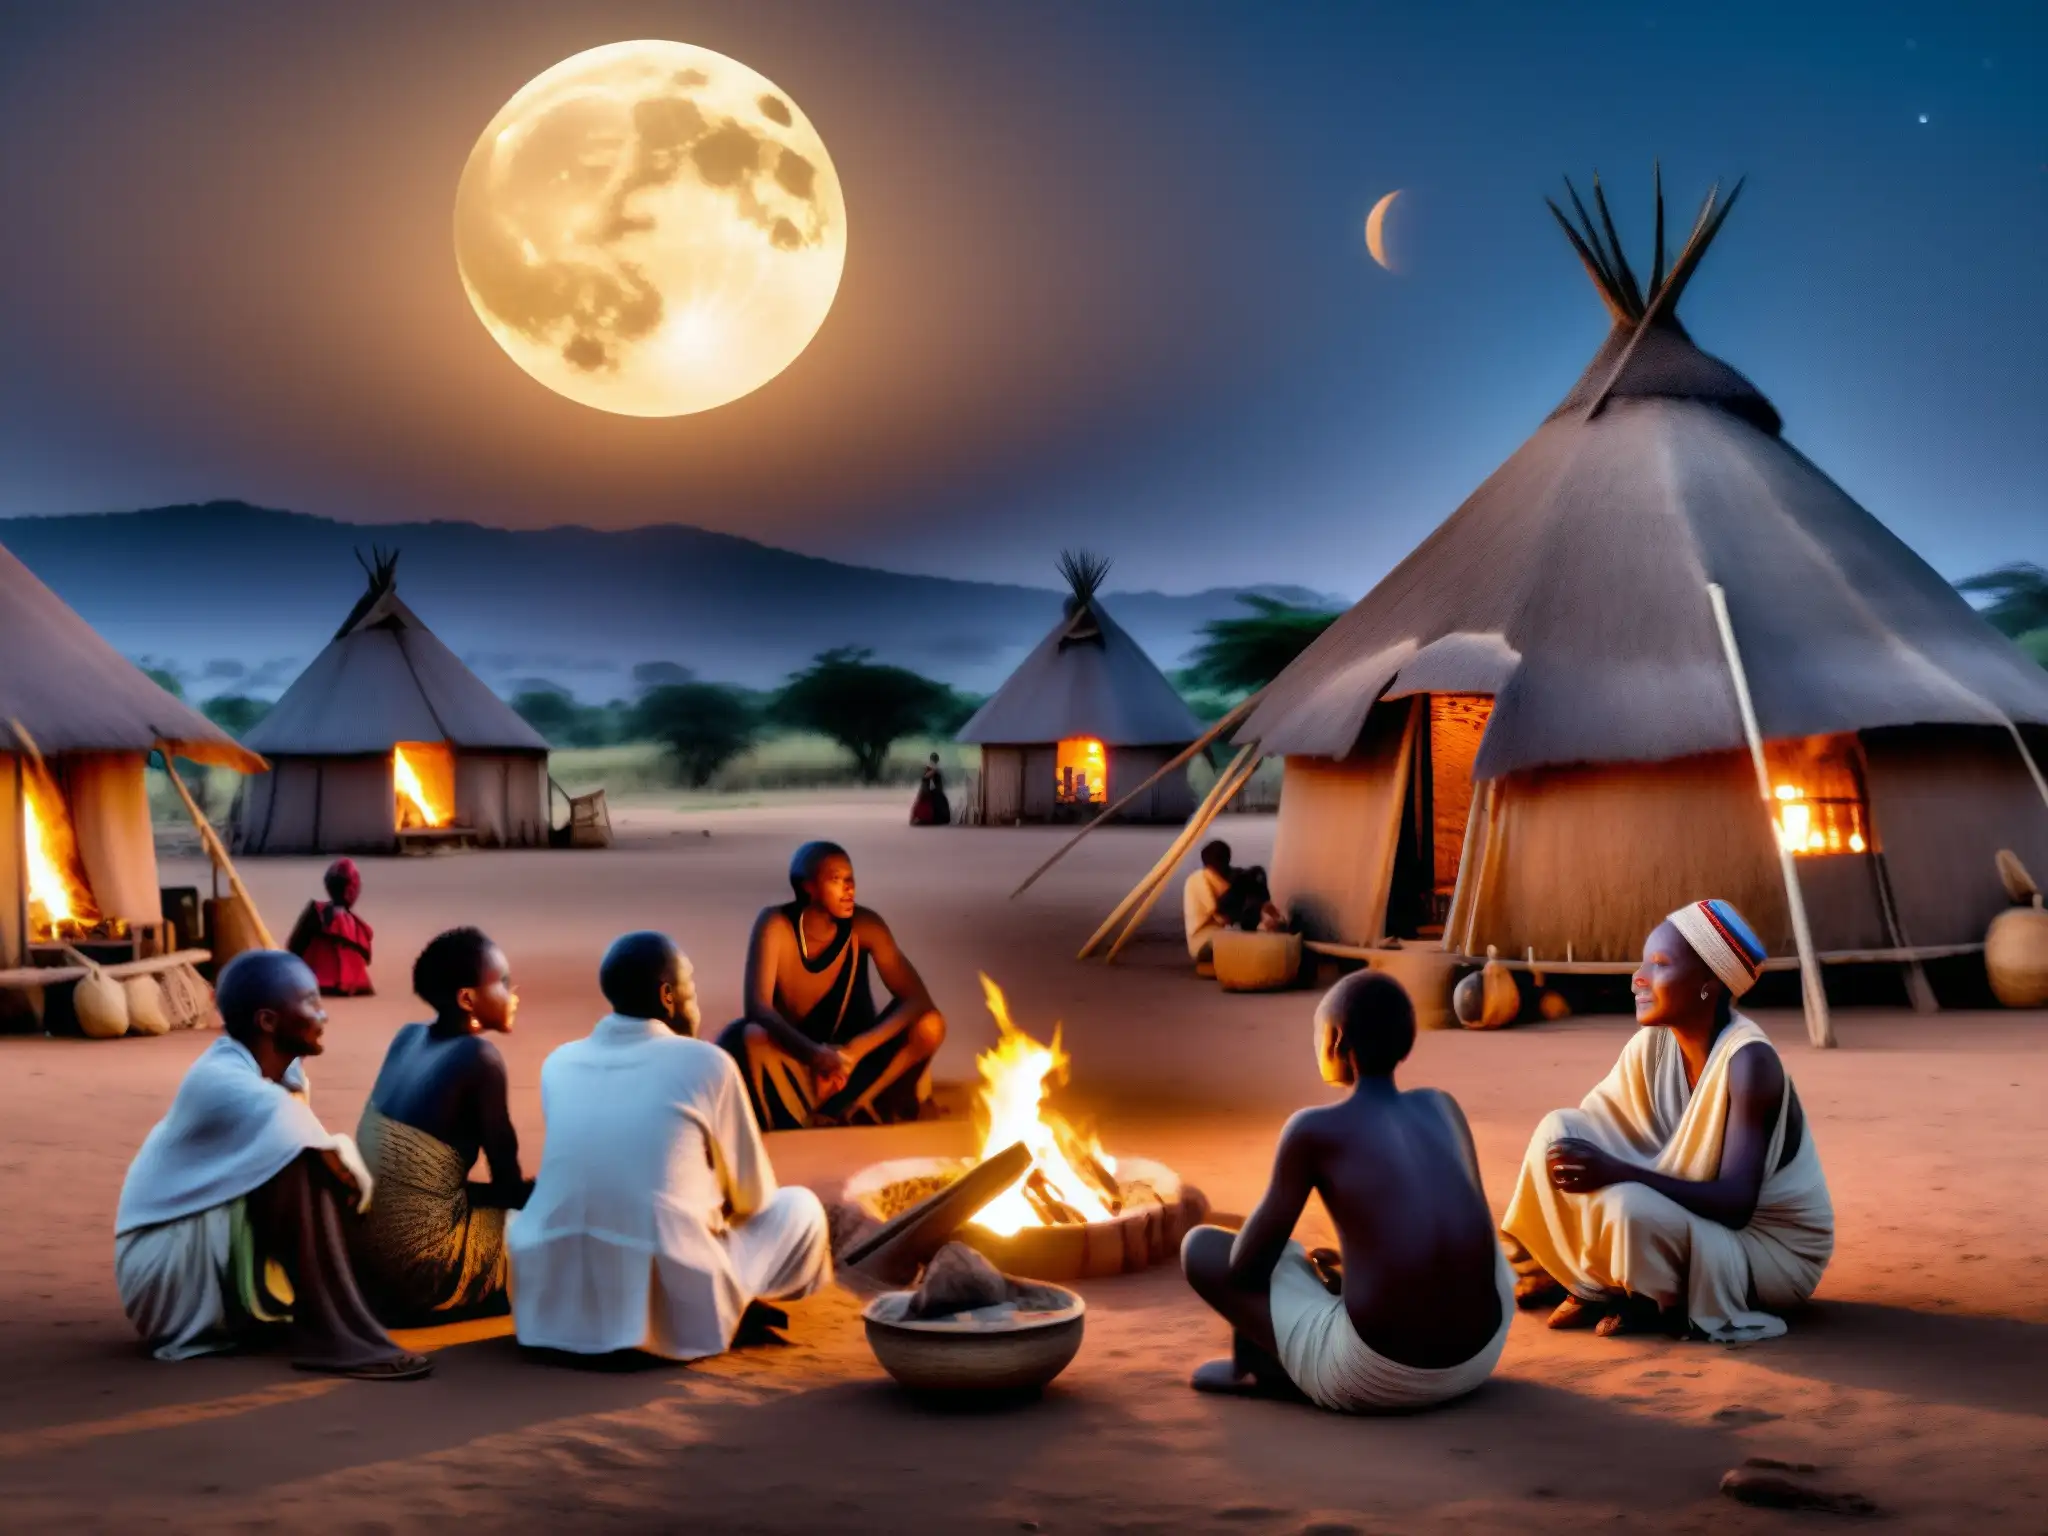 Noche mágica en aldea africana, ancianos cuentan historias junto al fuego bajo la luna llena